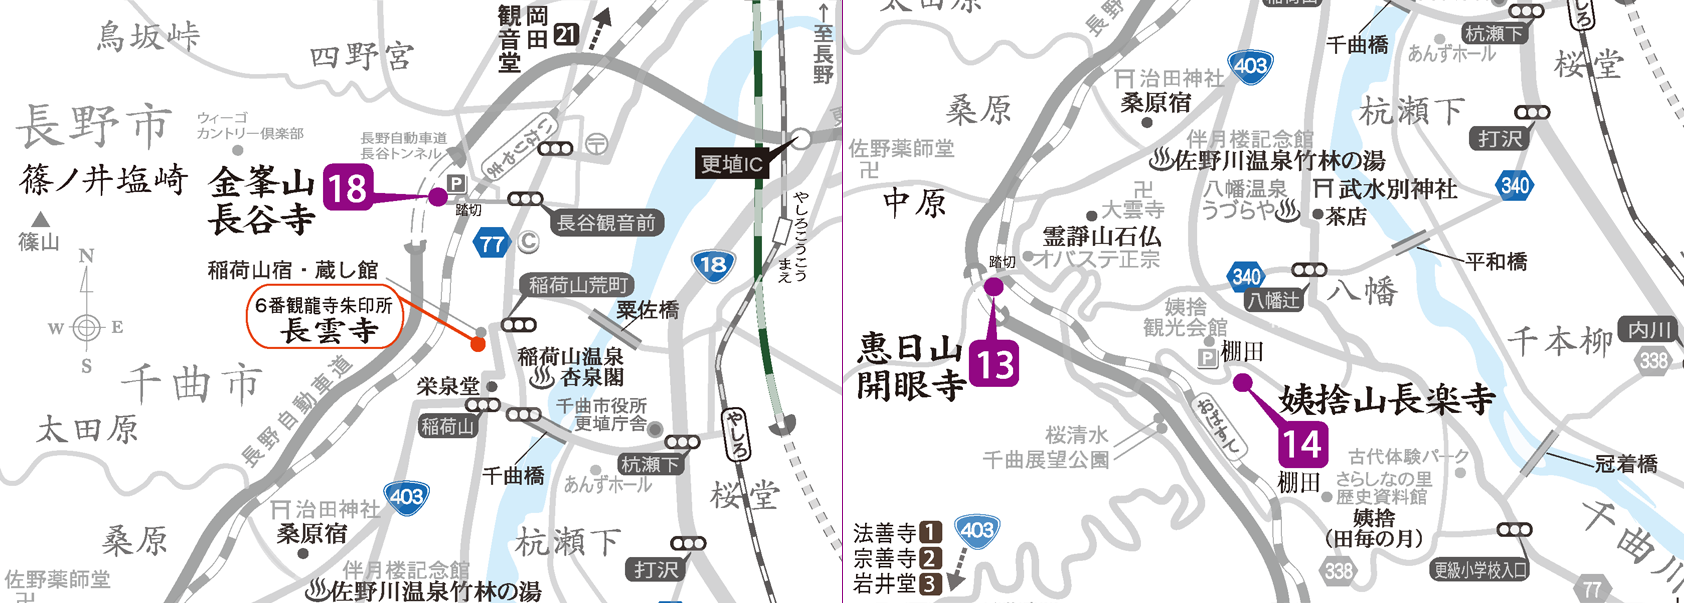 善光寺街道(千曲・長野)エリア地図